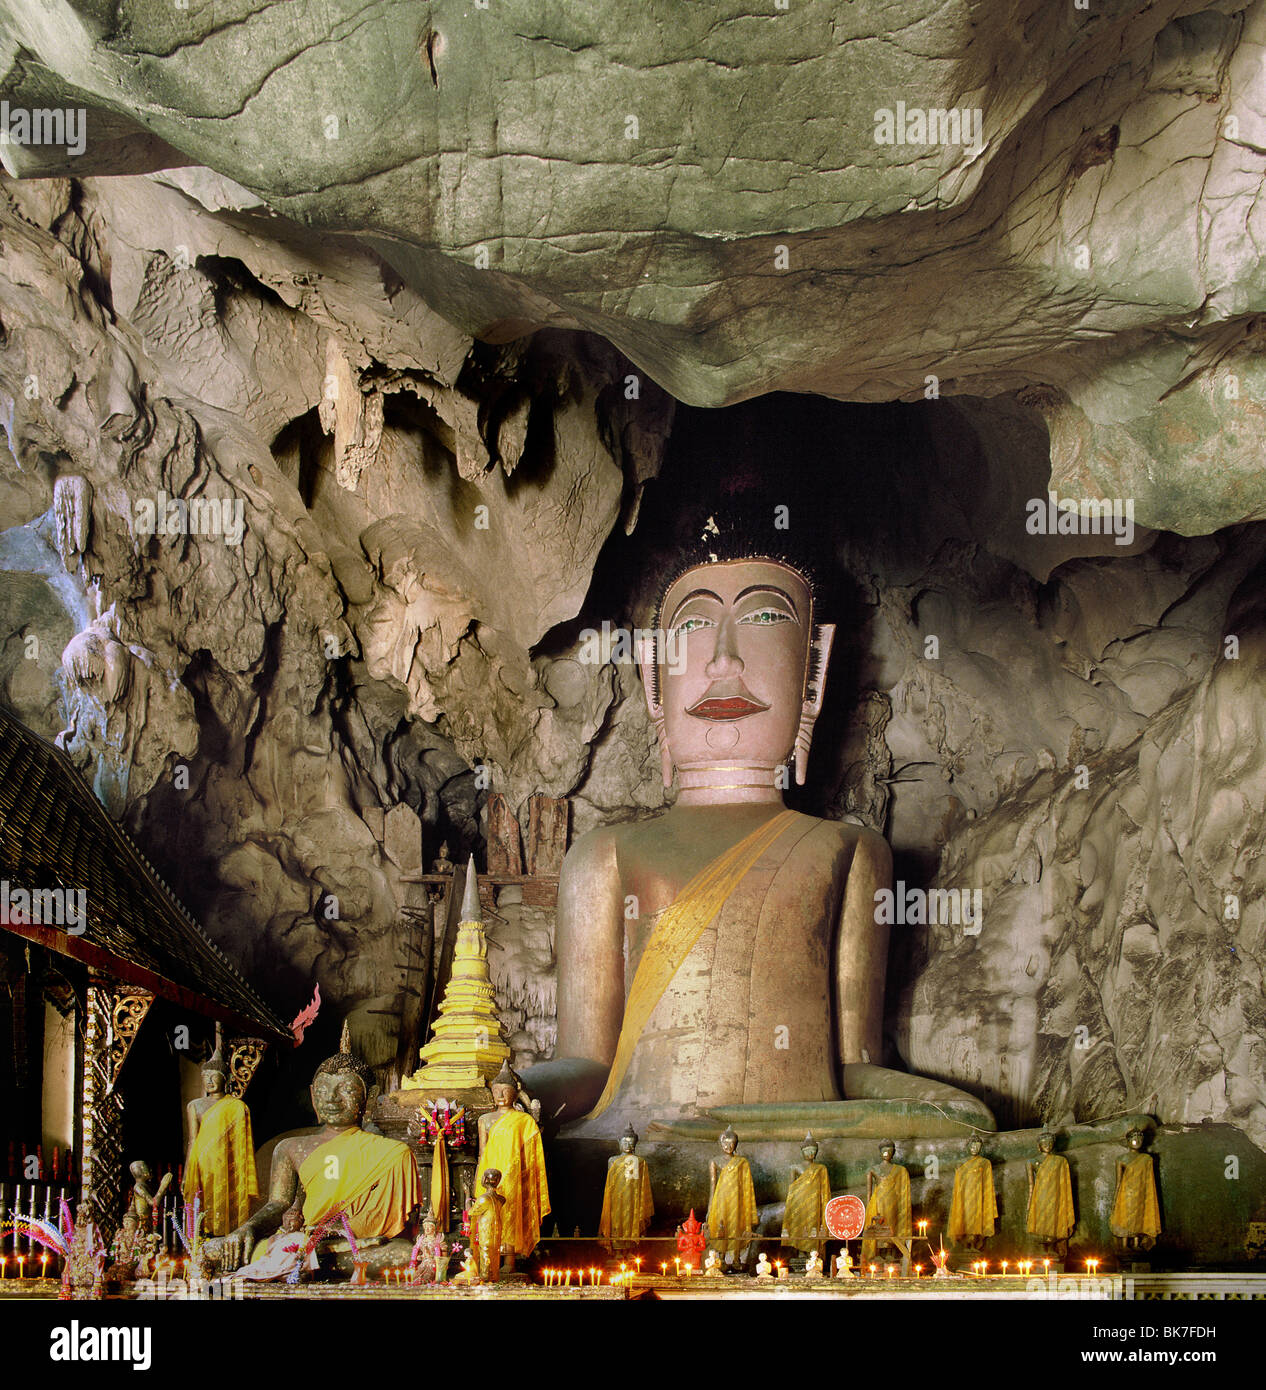 Image du Bouddha géant dans une grotte dans la province de Fang, le nord de la Thaïlande, Thaïlande, Asie du Sud, Asie Banque D'Images